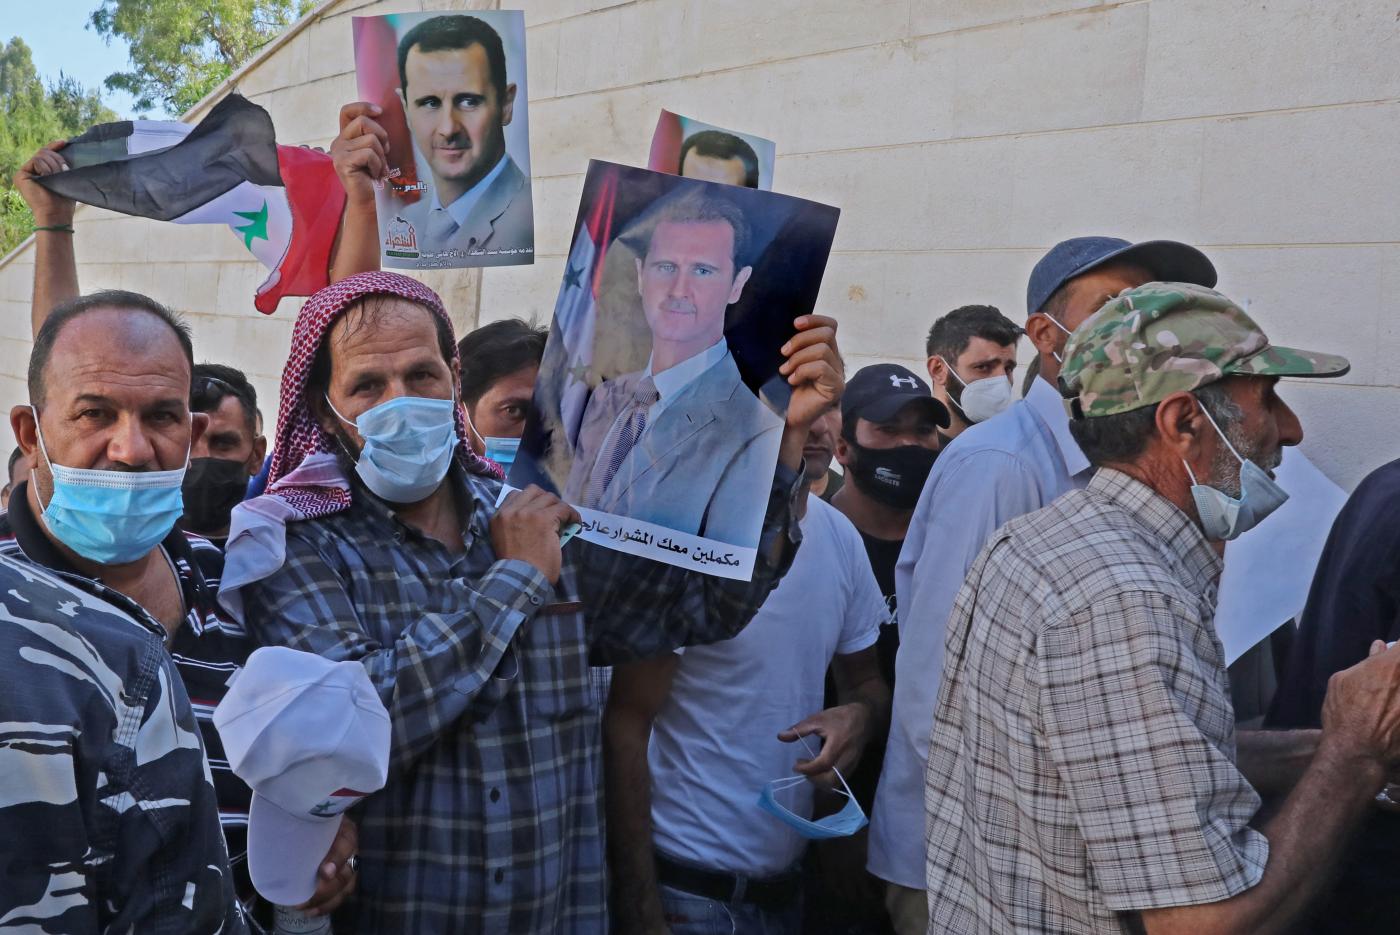 أنصار “الأسد” يتعرضون للاعتداء في لبنان أثناء توجههم إلى صناديق “الاقتراع”